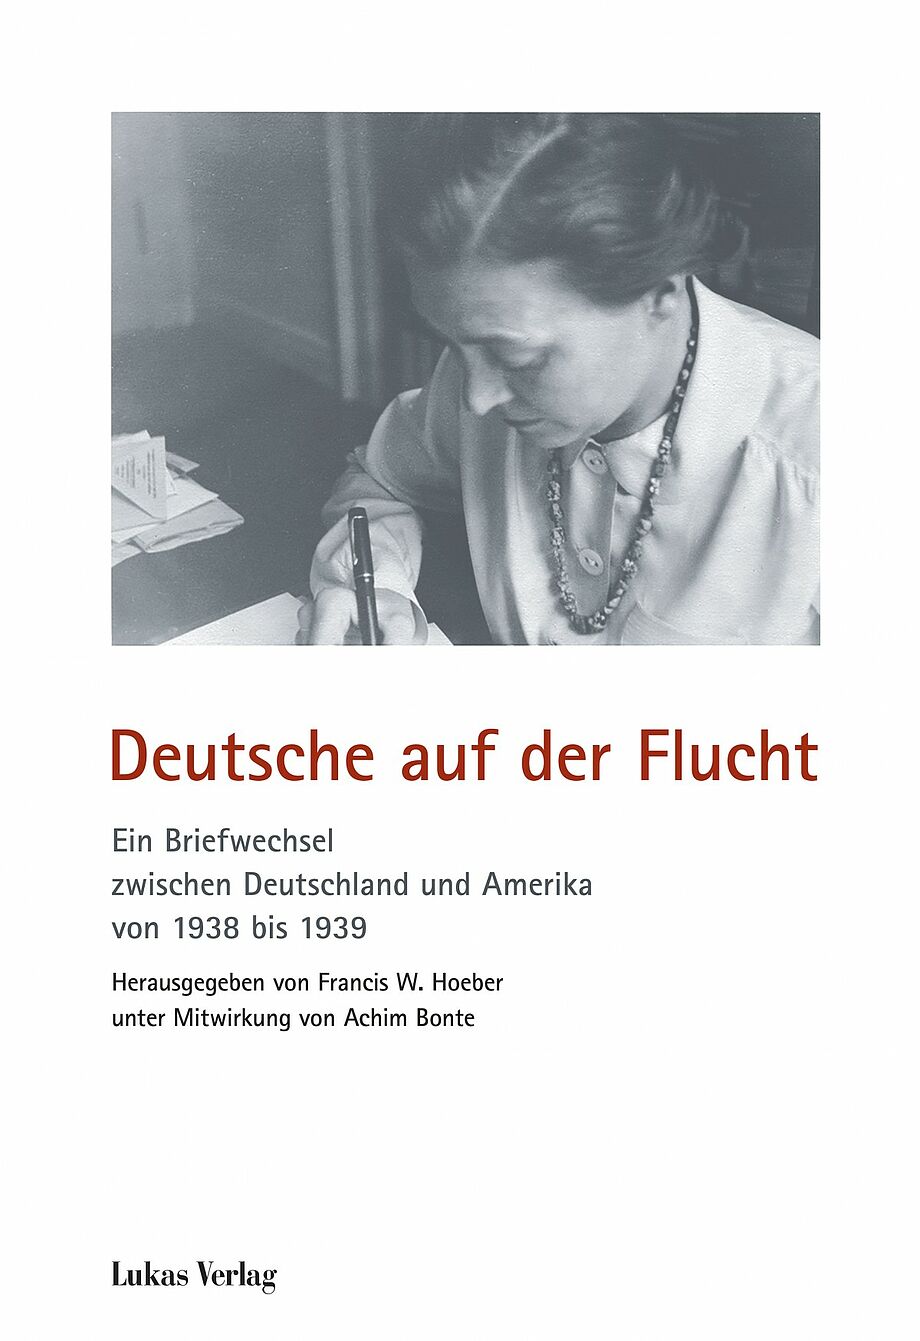 Cover des Buches "Deutsche auf der Flucht" von Francis W. Hoeber und Dr. Achim Bonte